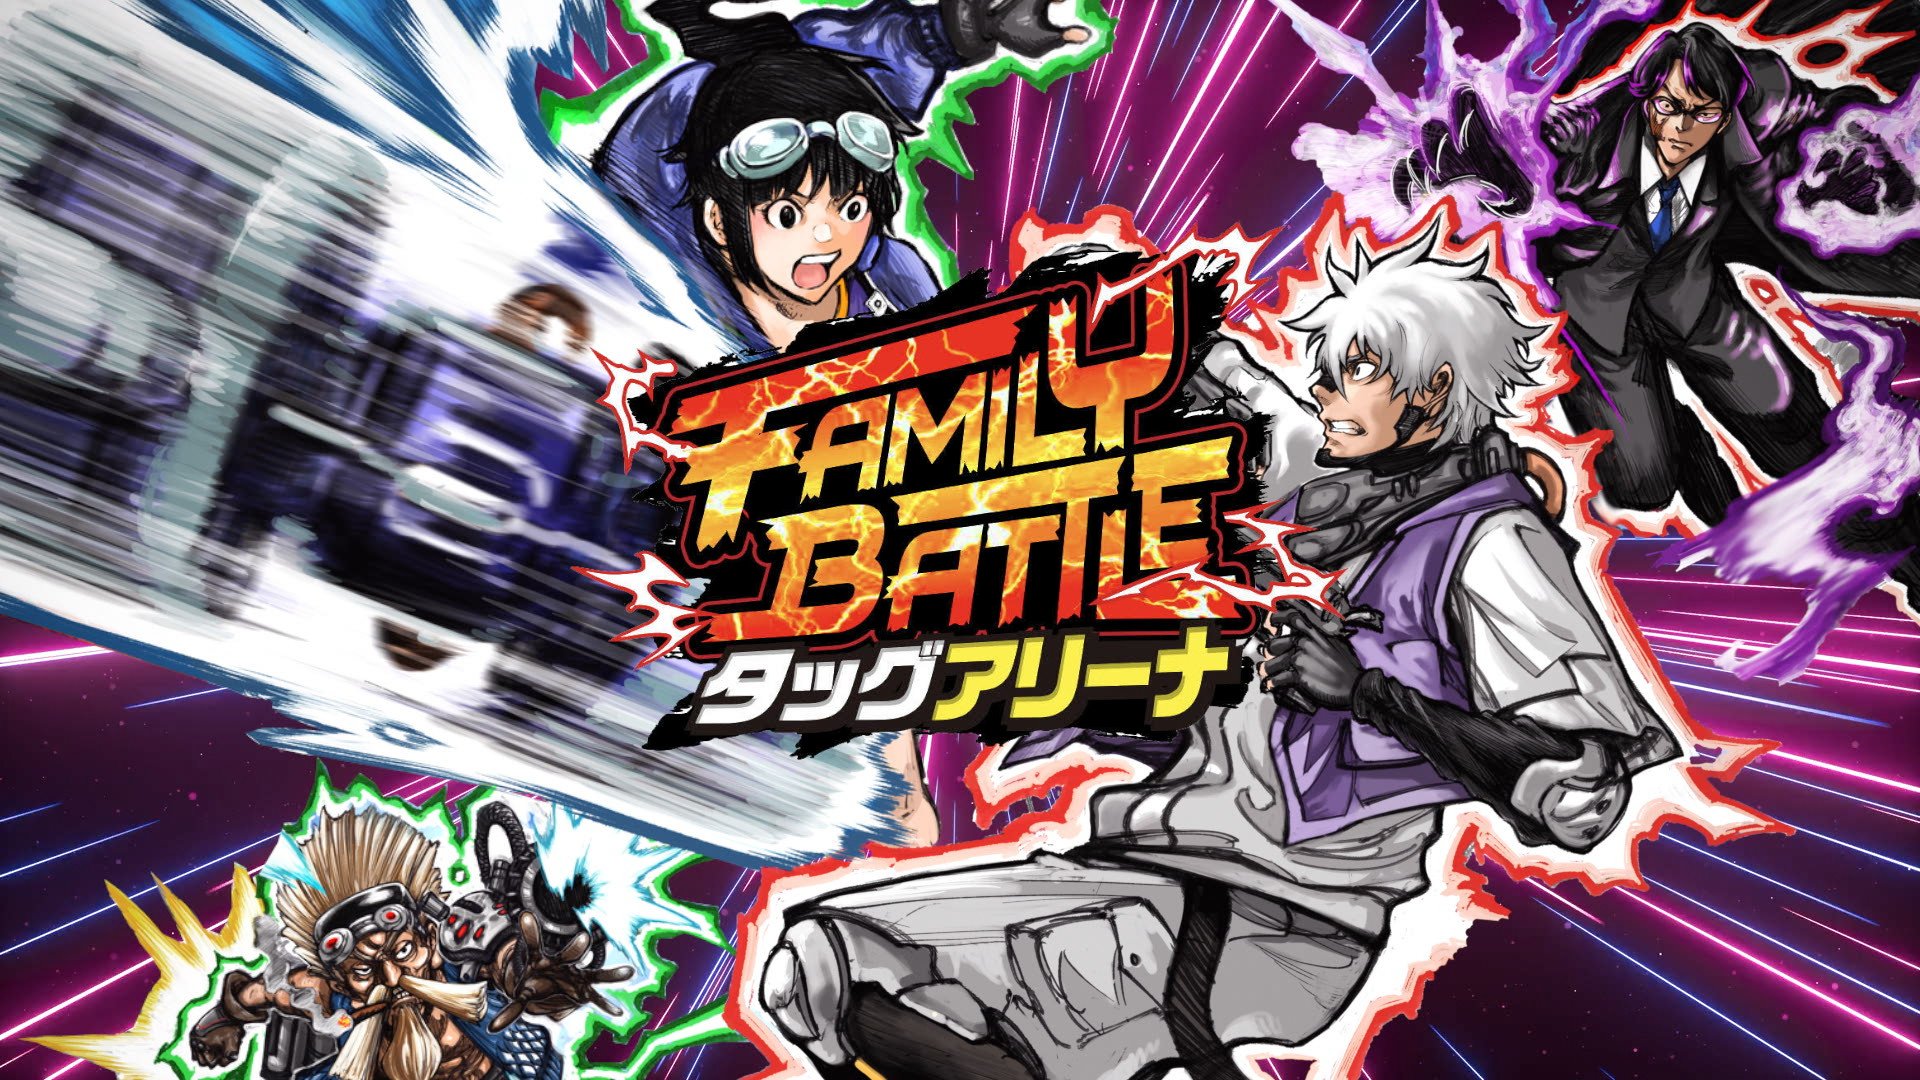 FAMILY BATTLE: Tag Arena para PC será lançado em Acesso Antecipado em 6 de agosto